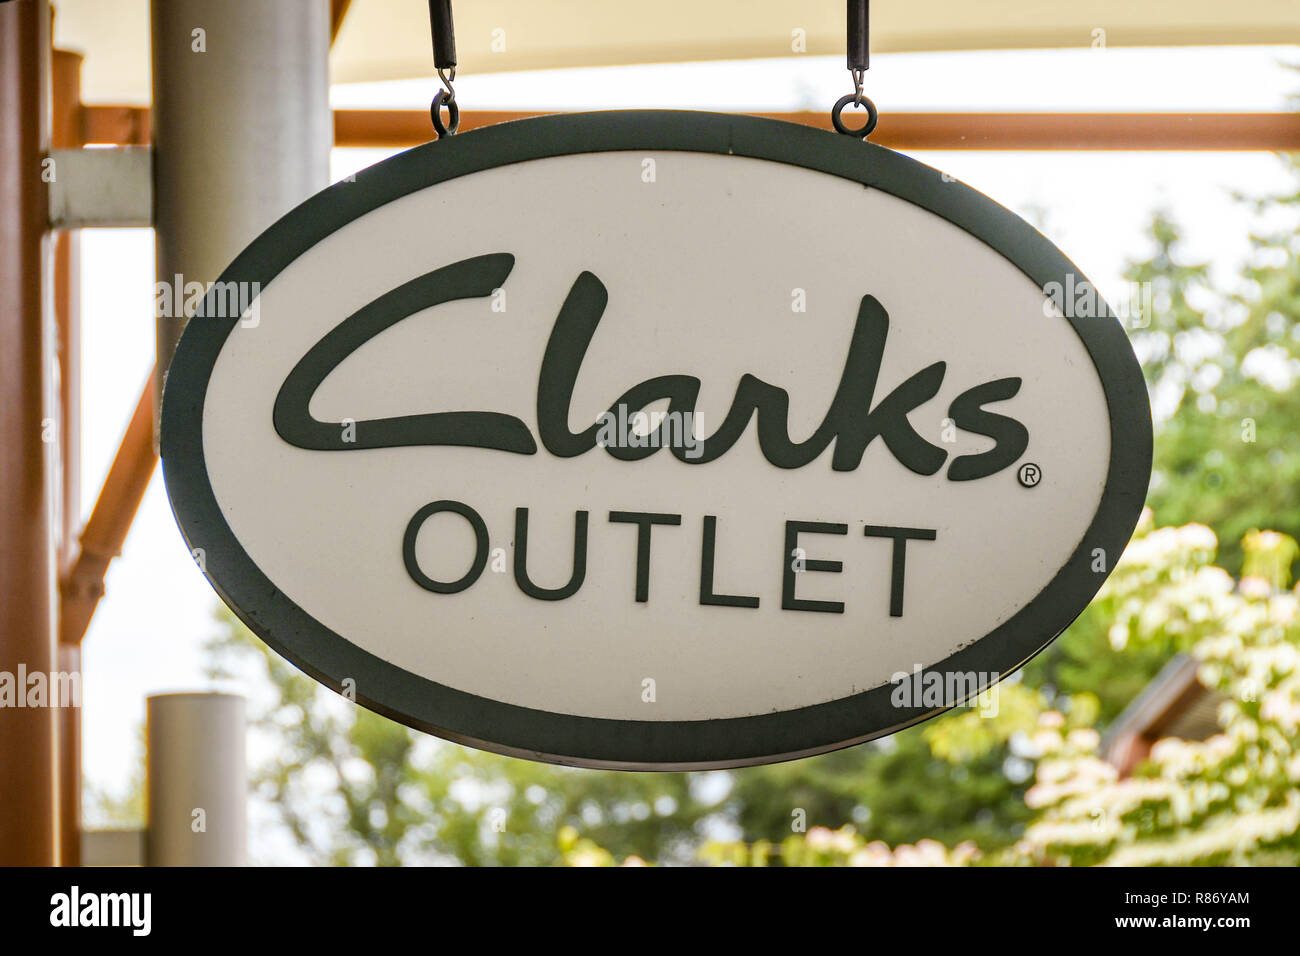 clarks outlet shop near me